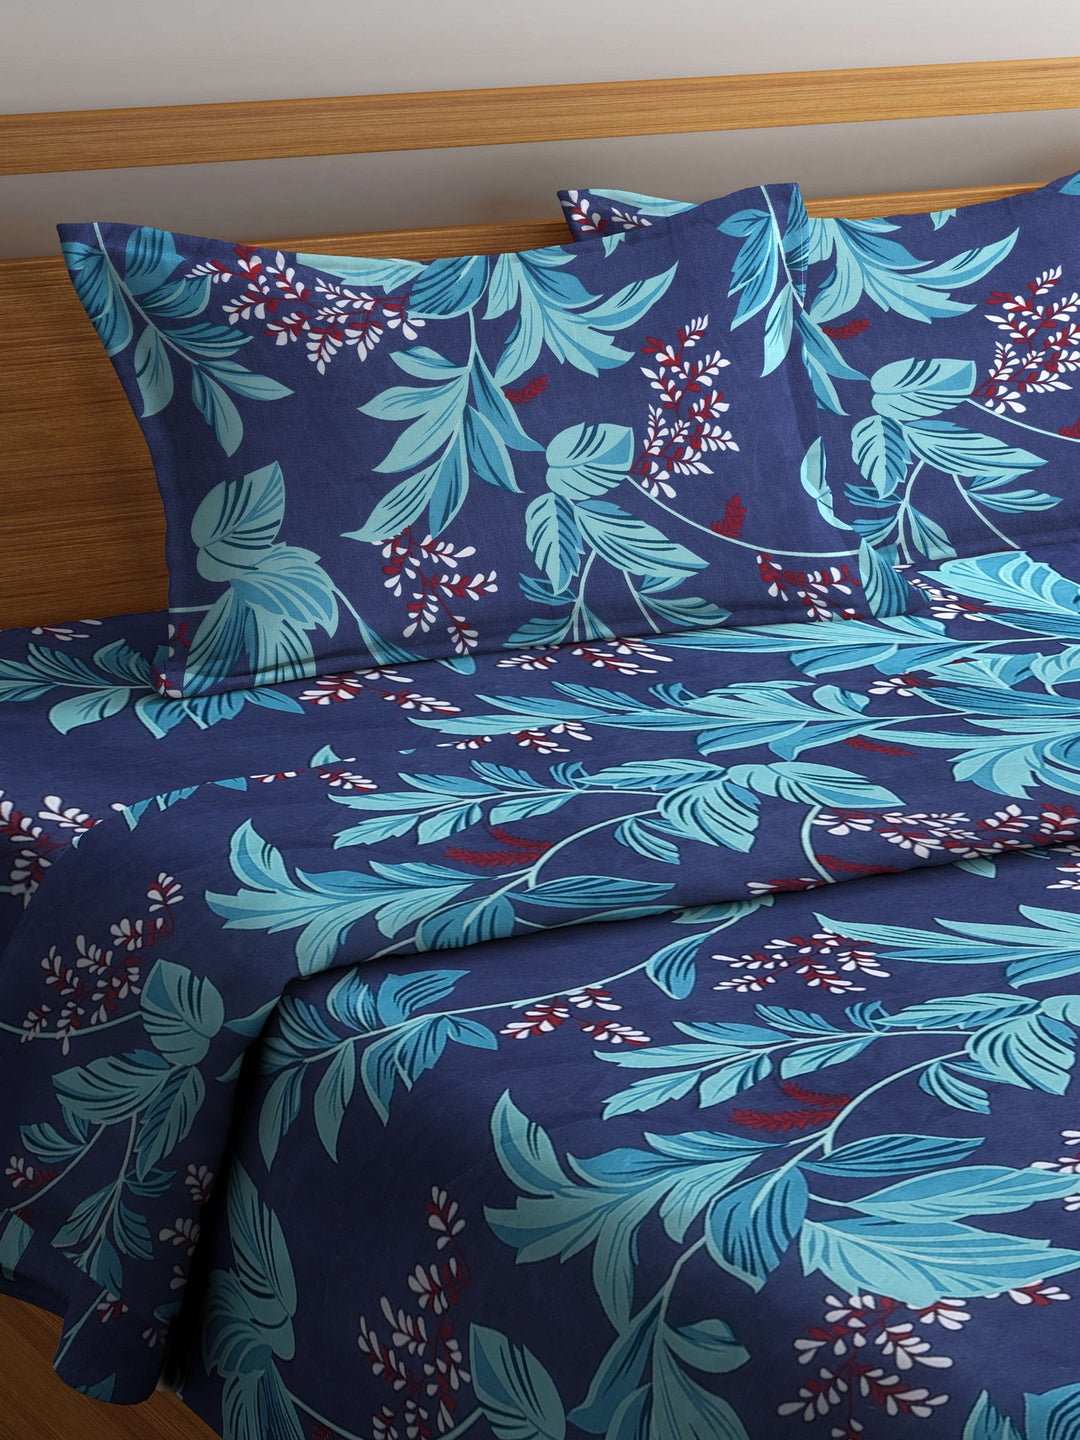 Arrabi Blue Leaf TC Cotton Blend Double Size Comforter Bedding Set with 2 Pillow Cover